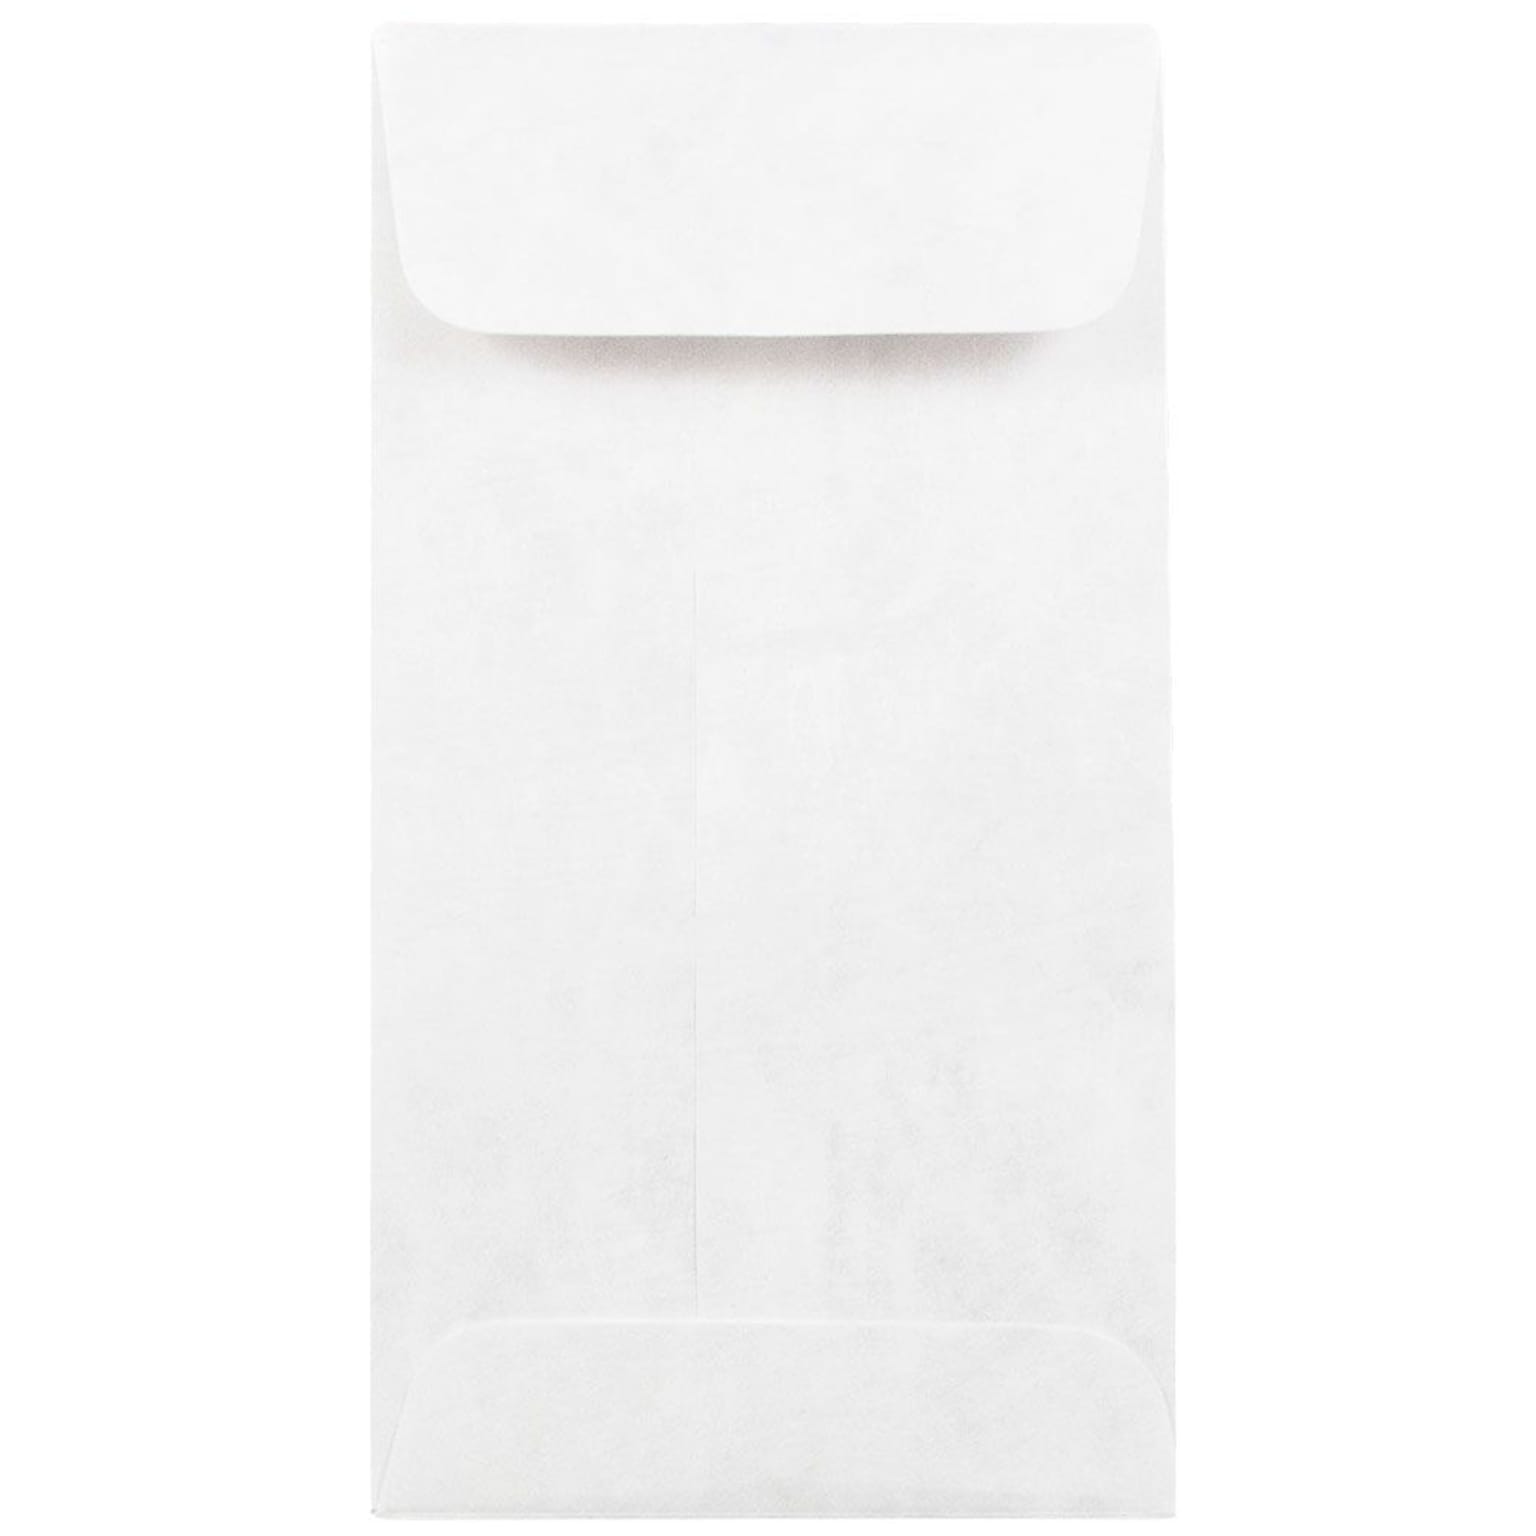 JAM Paper® #7 Coin Tyvek Tear-Proof Open End Envelopes, 3.5 x 6.5, White, 250/Box (2131076I)